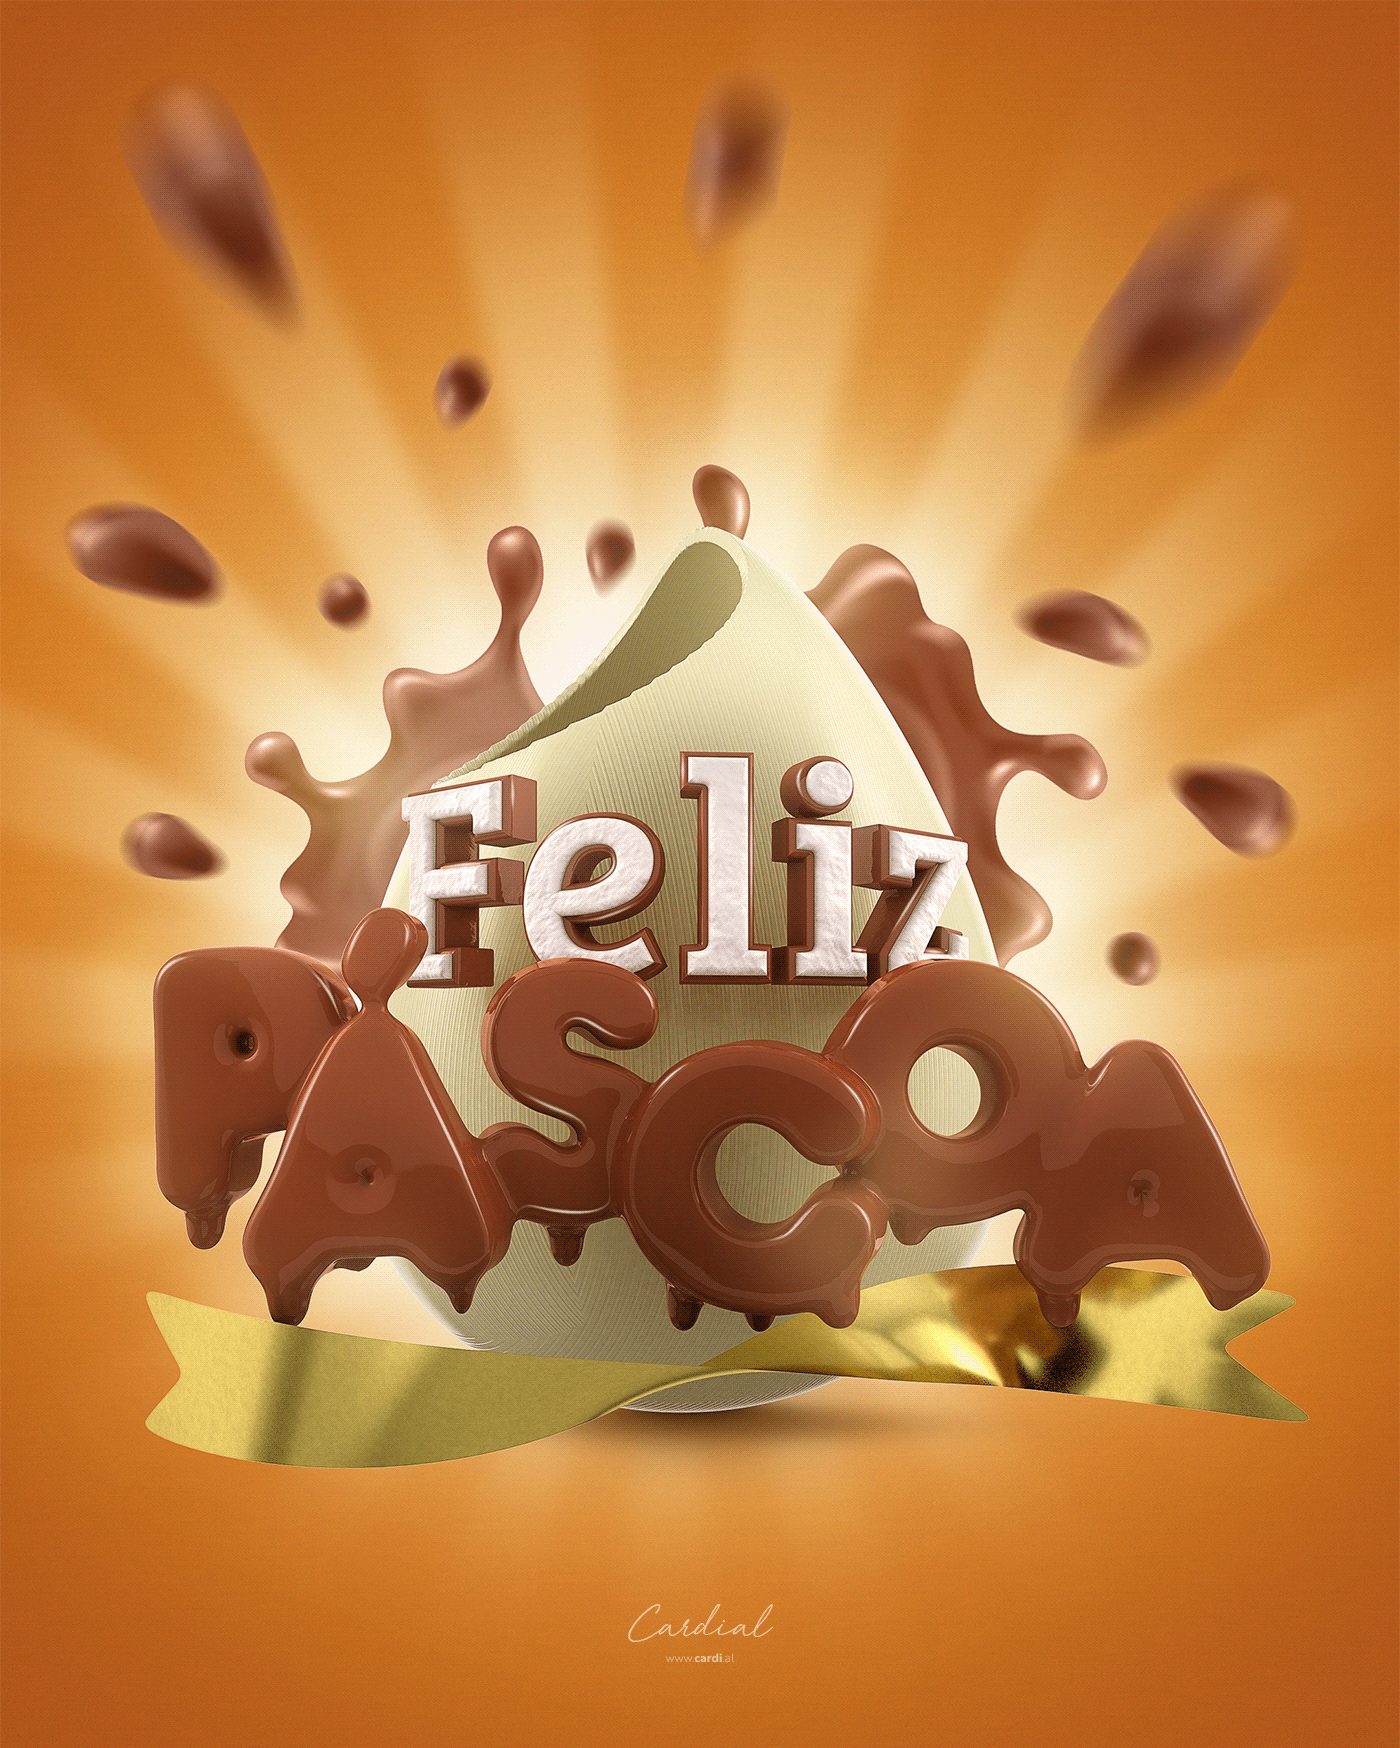 3D CHOCOLATE logo 3d ovo de páscoa páscoa selo 3d Selo 3D Chocolate selo 3d páscoa selo 3d varejo SELO DE PÁSCOA selo varejo